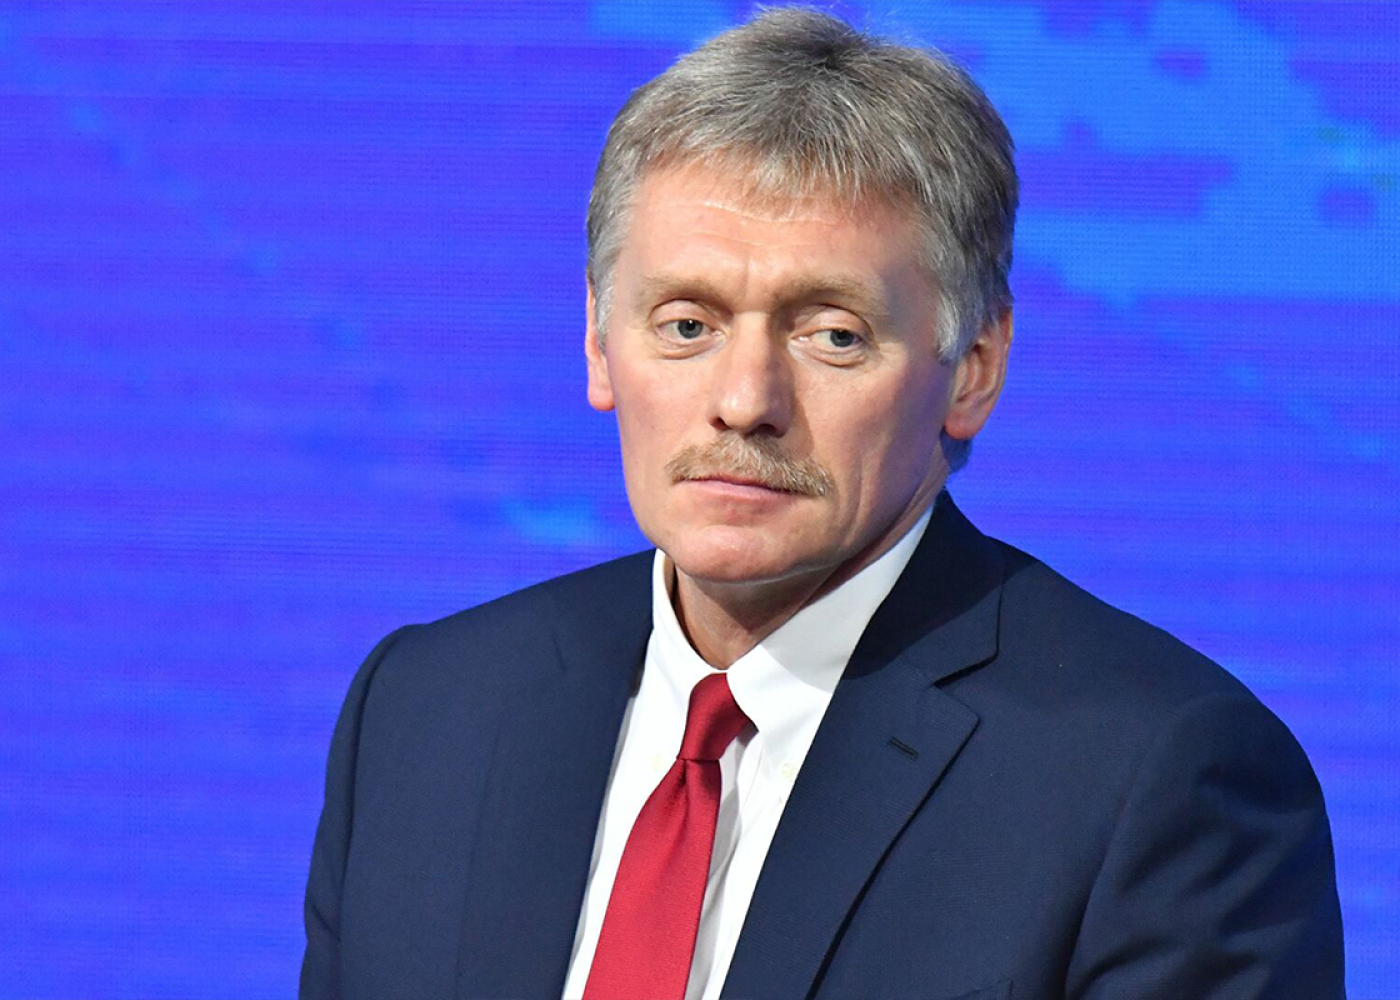 “Krokus”dakı terror aktı ilə bağlı rəsmi versiya irəli sürülməyib -Peskov